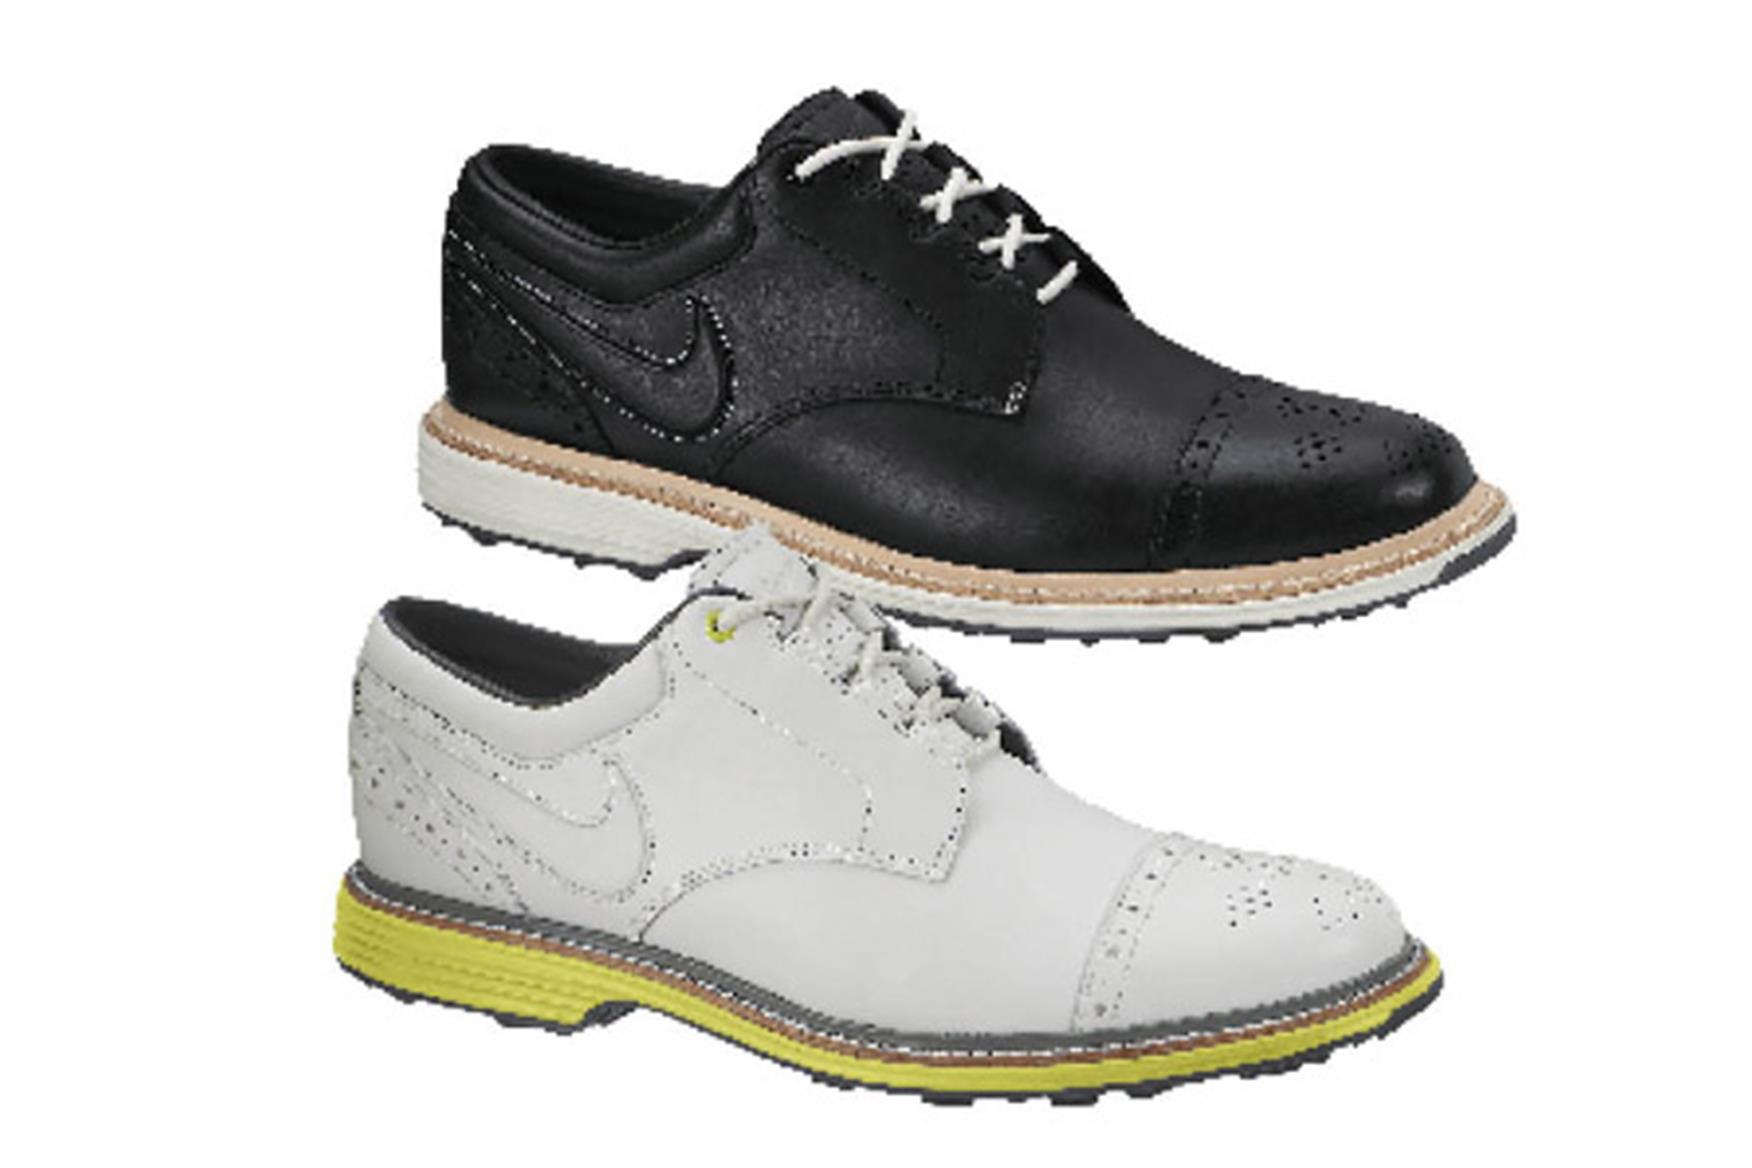 lunar clayton golf shoes